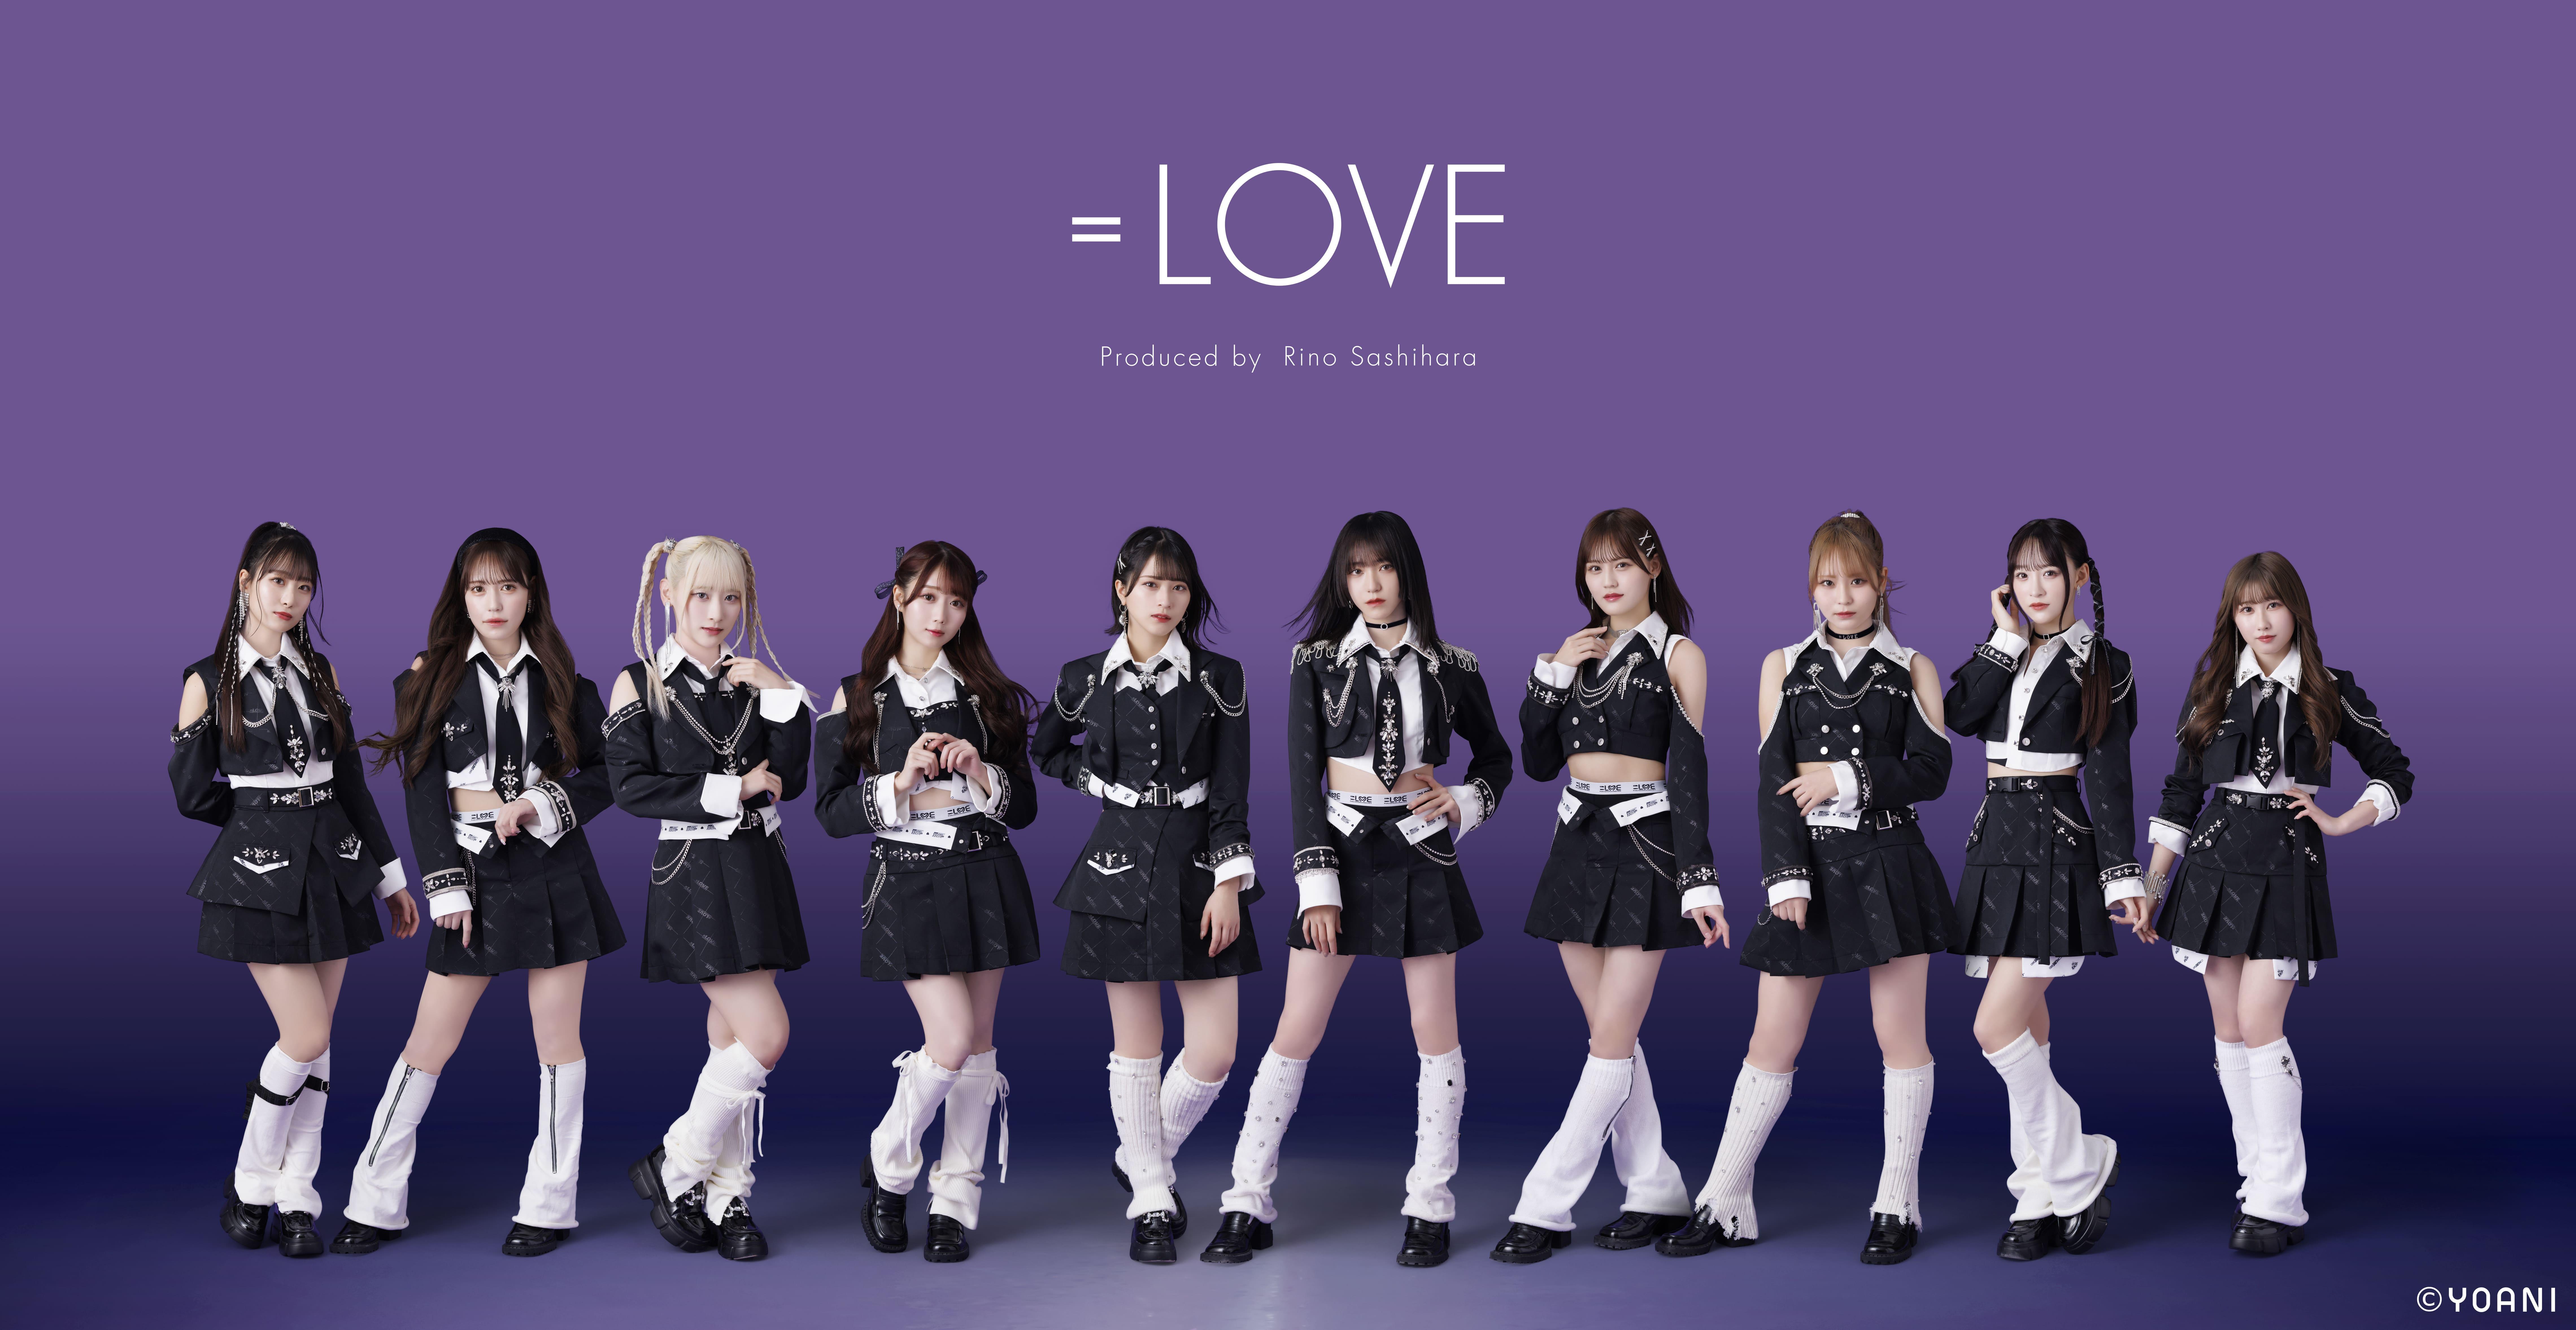 指原莉乃プロデュースによるアイドルグループ「=LOVE」「≠ME」2グループによる「イコノイ合同個別お話し会」をパシフィコ横浜で開催!!